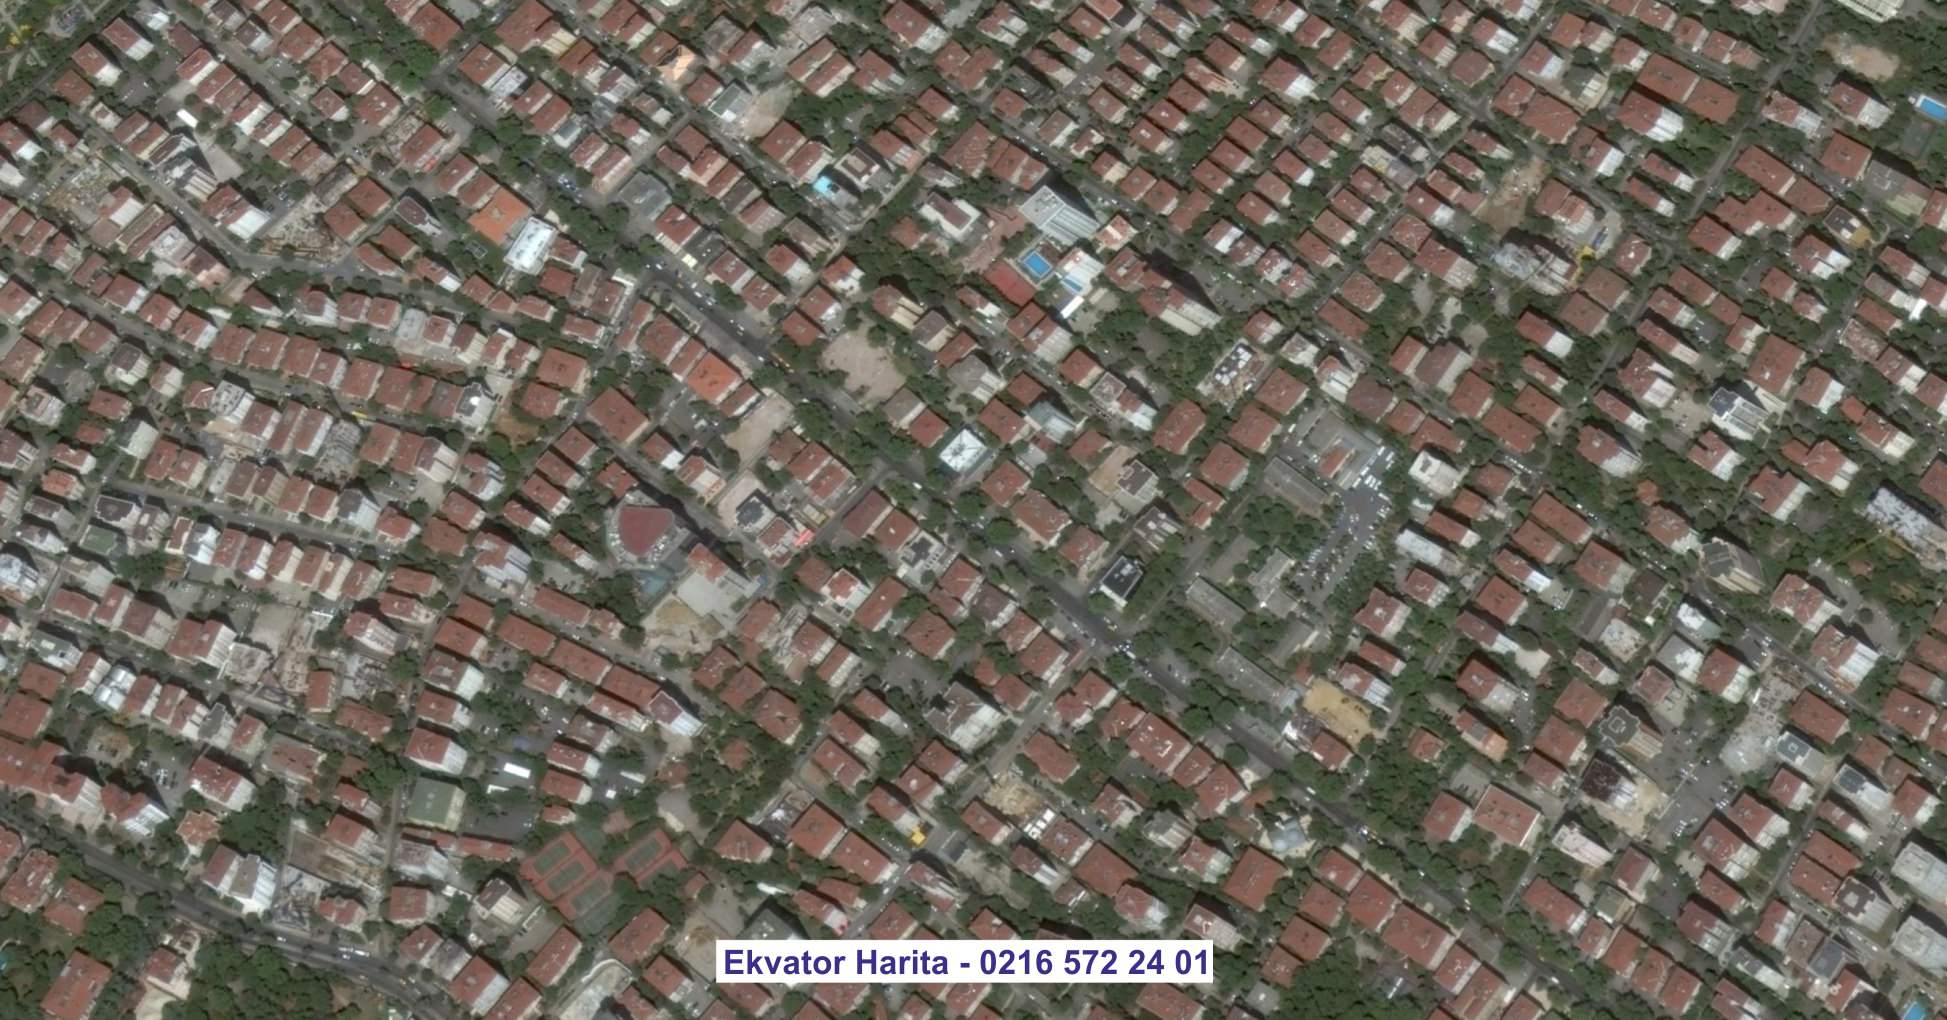 Cebeci Uydu Görüntüsü Örnek Fotoğrafı